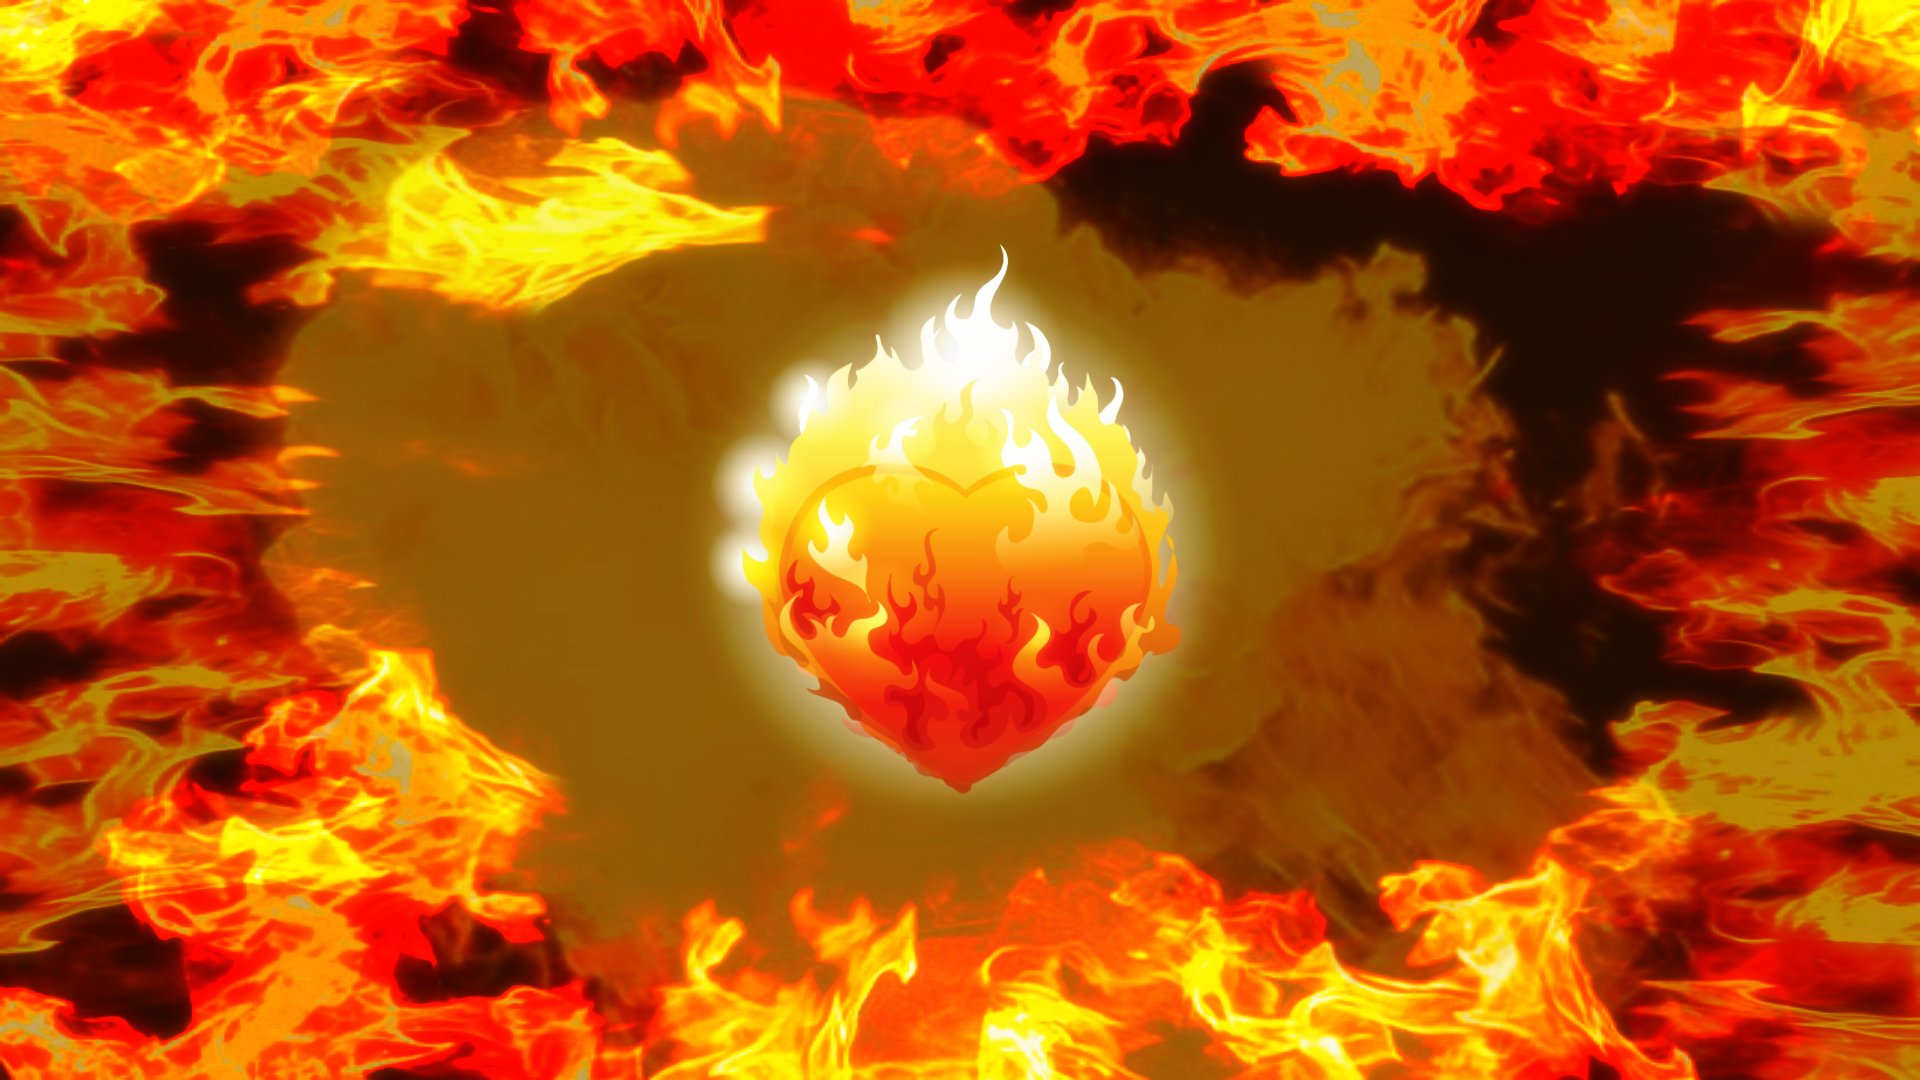 Heart on Fire by lonewolf6738